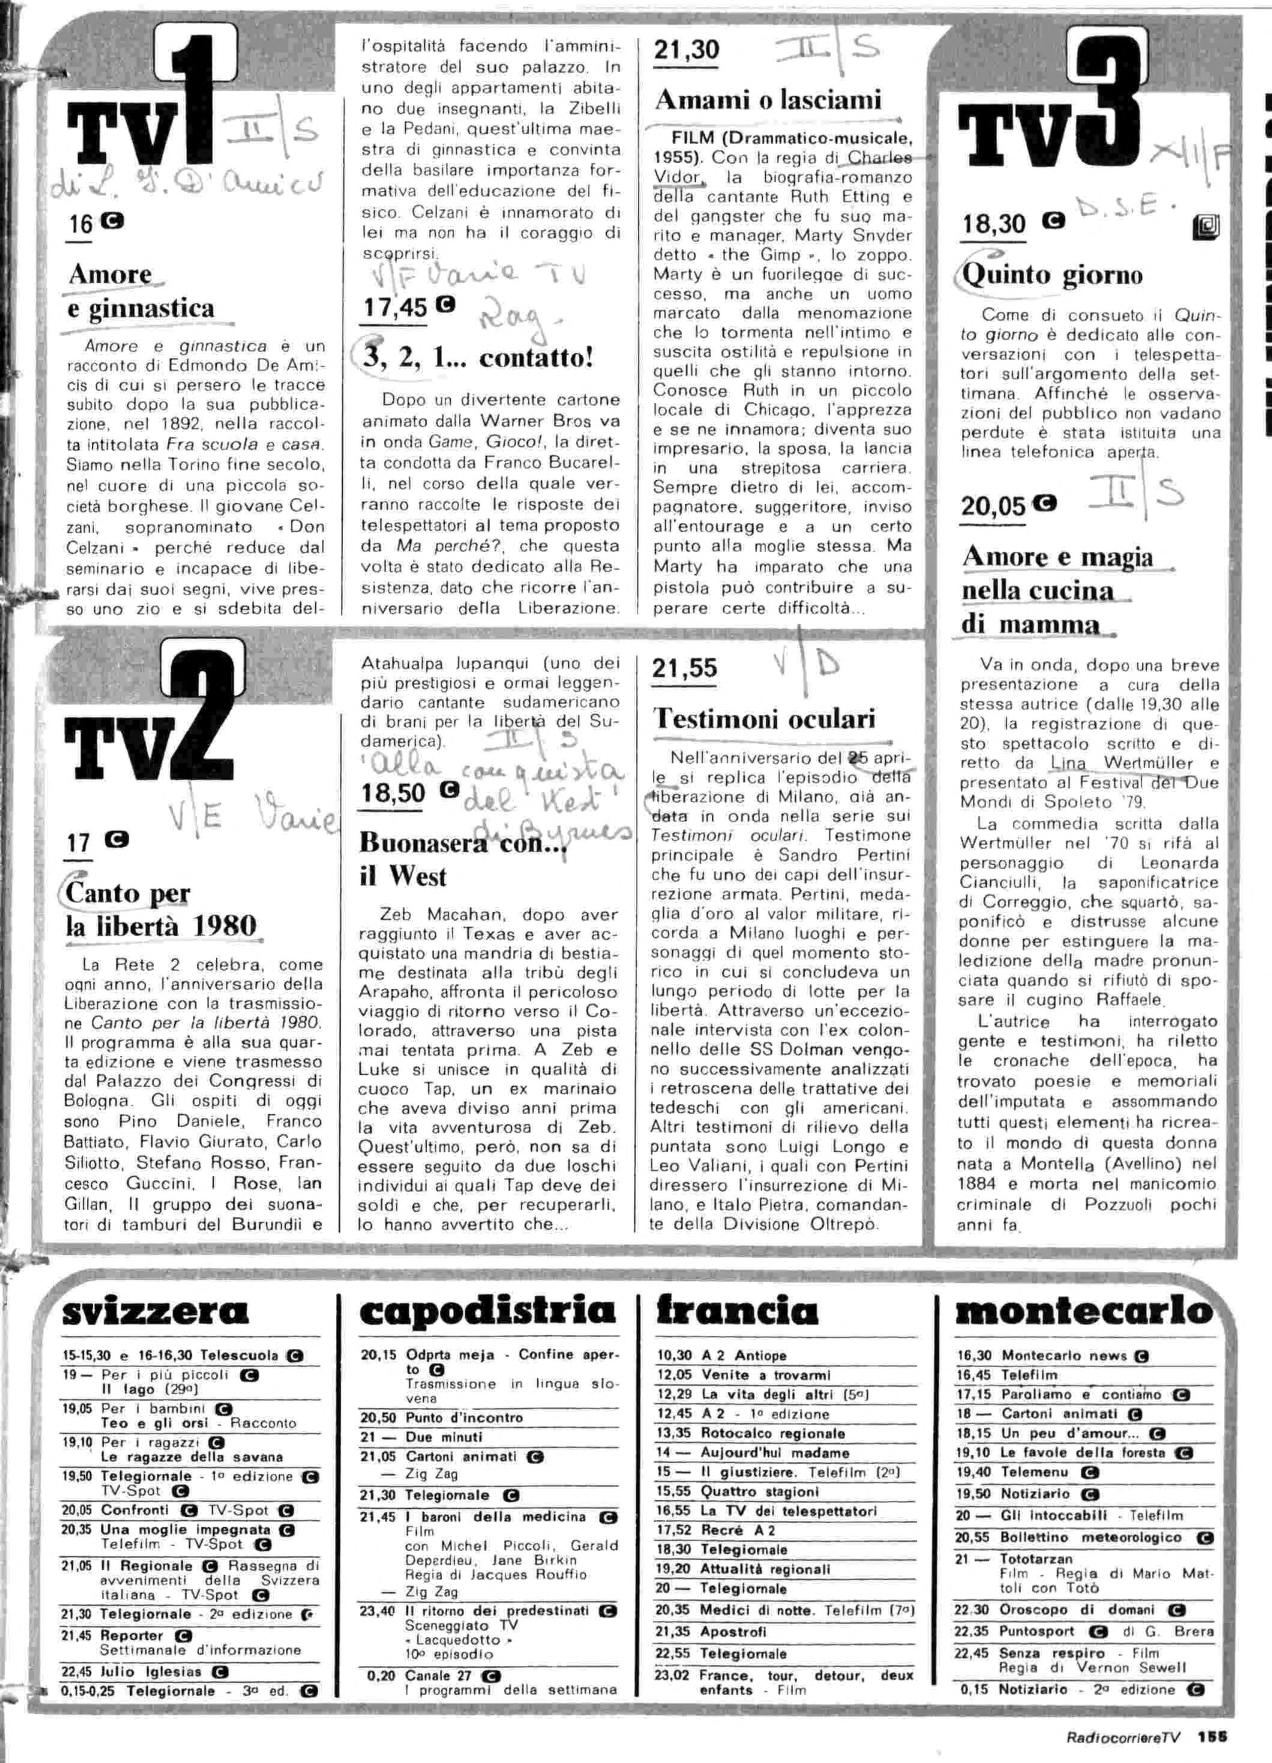 RC-1980-17_0154.jp2&id=Radiocorriere-198